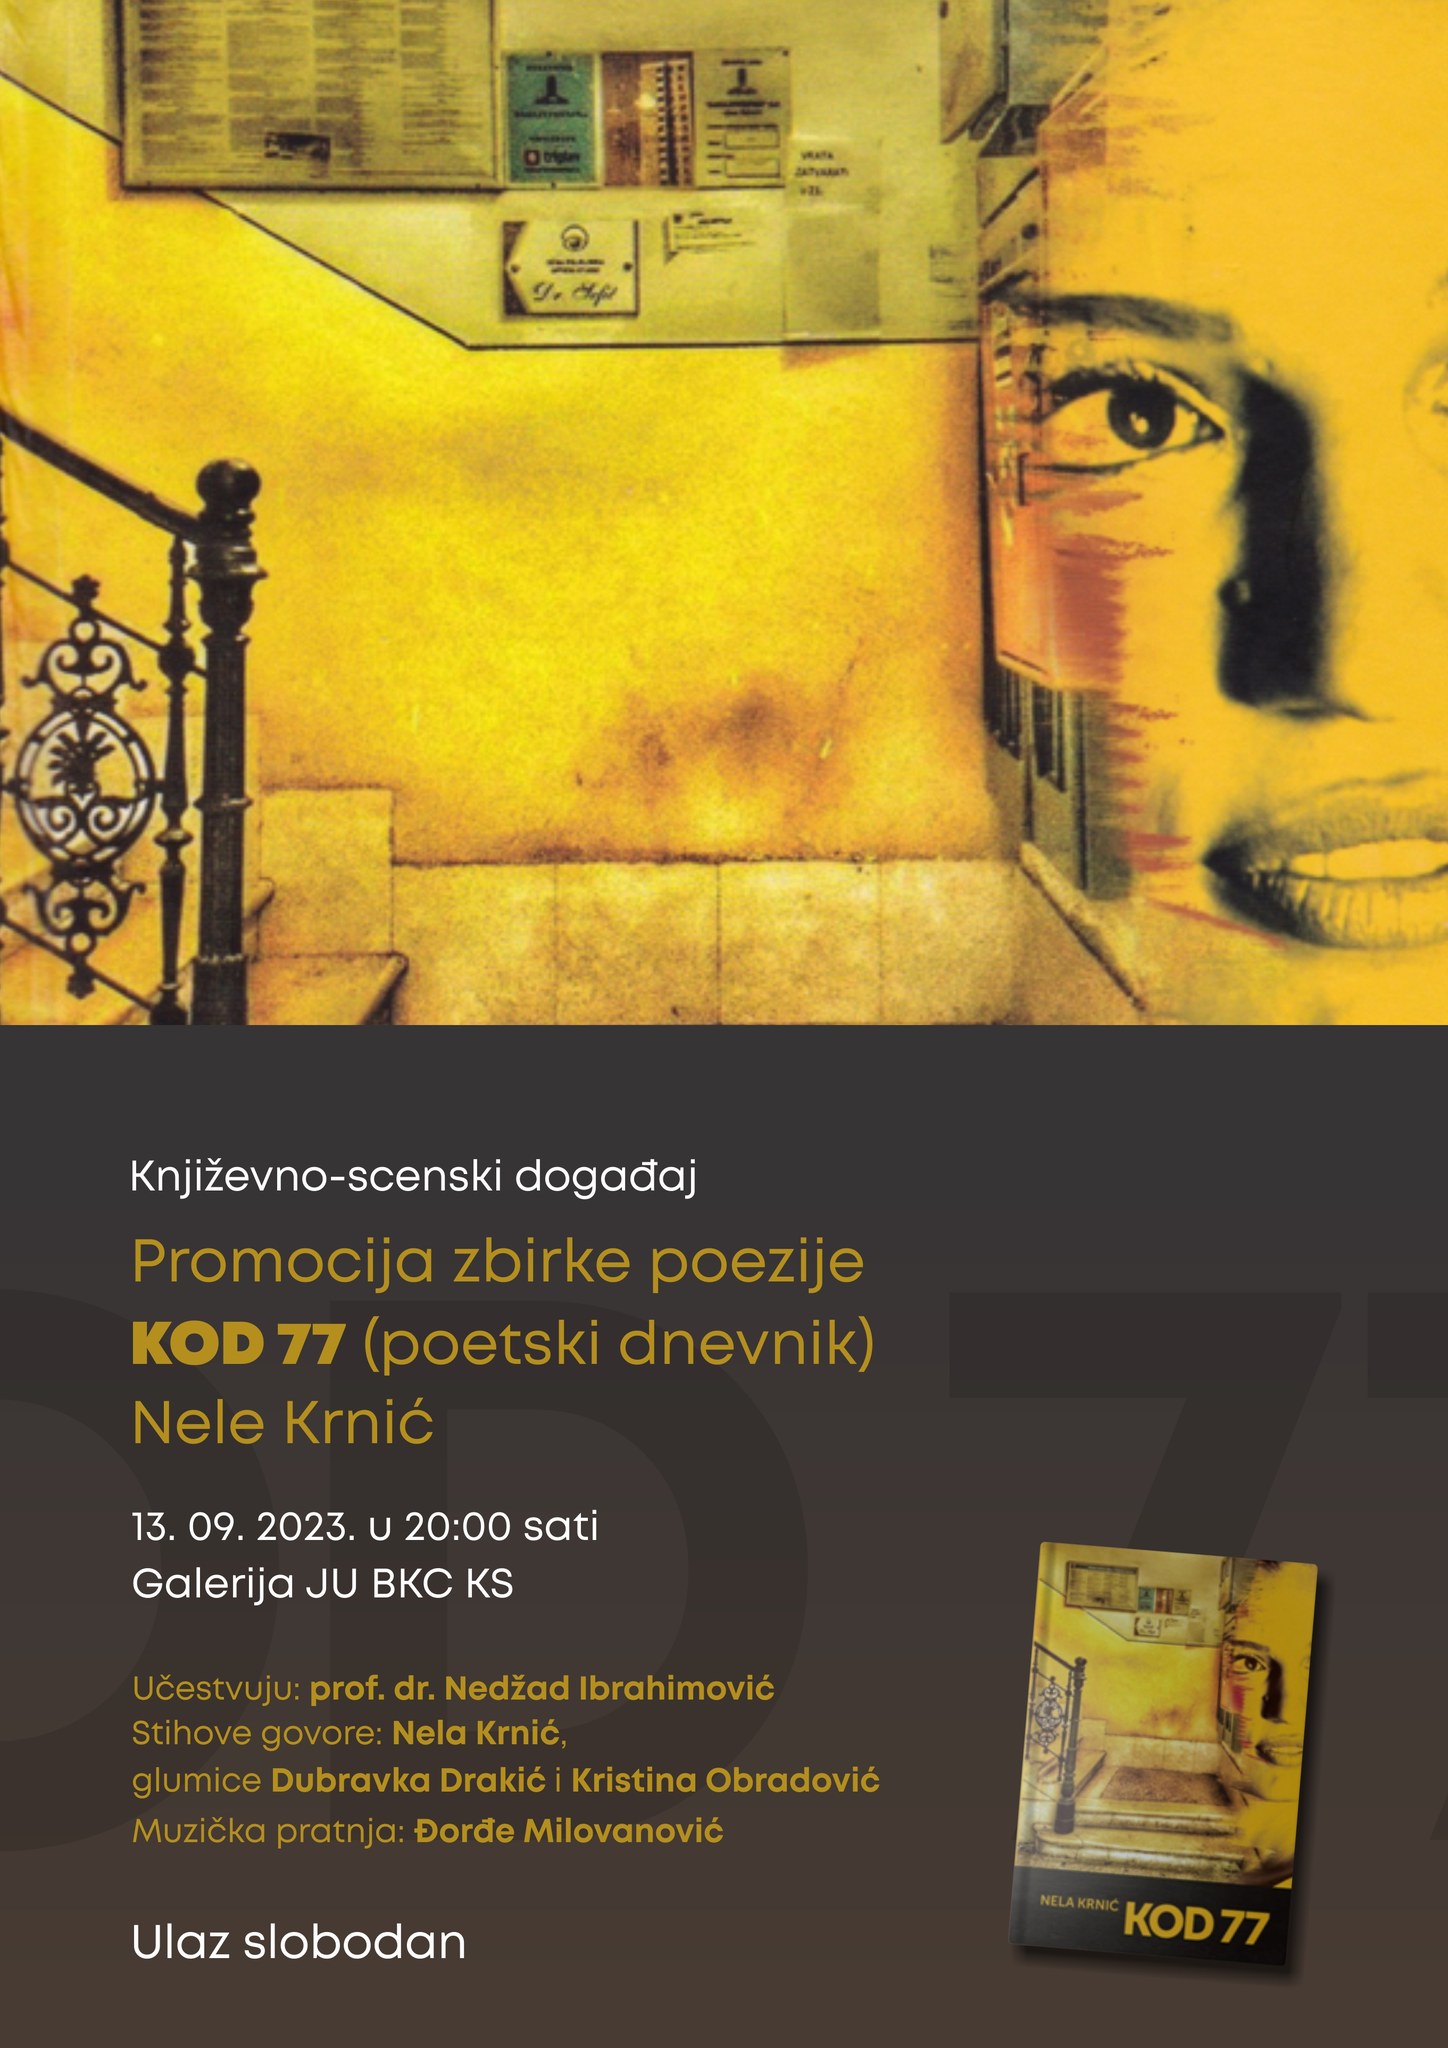 Predstavljanje zbirke poezije “Kod 77” (poetski dnevnik) Nele Krnić, 13. 09. 2023. u 20 sati, JU BKC KS.